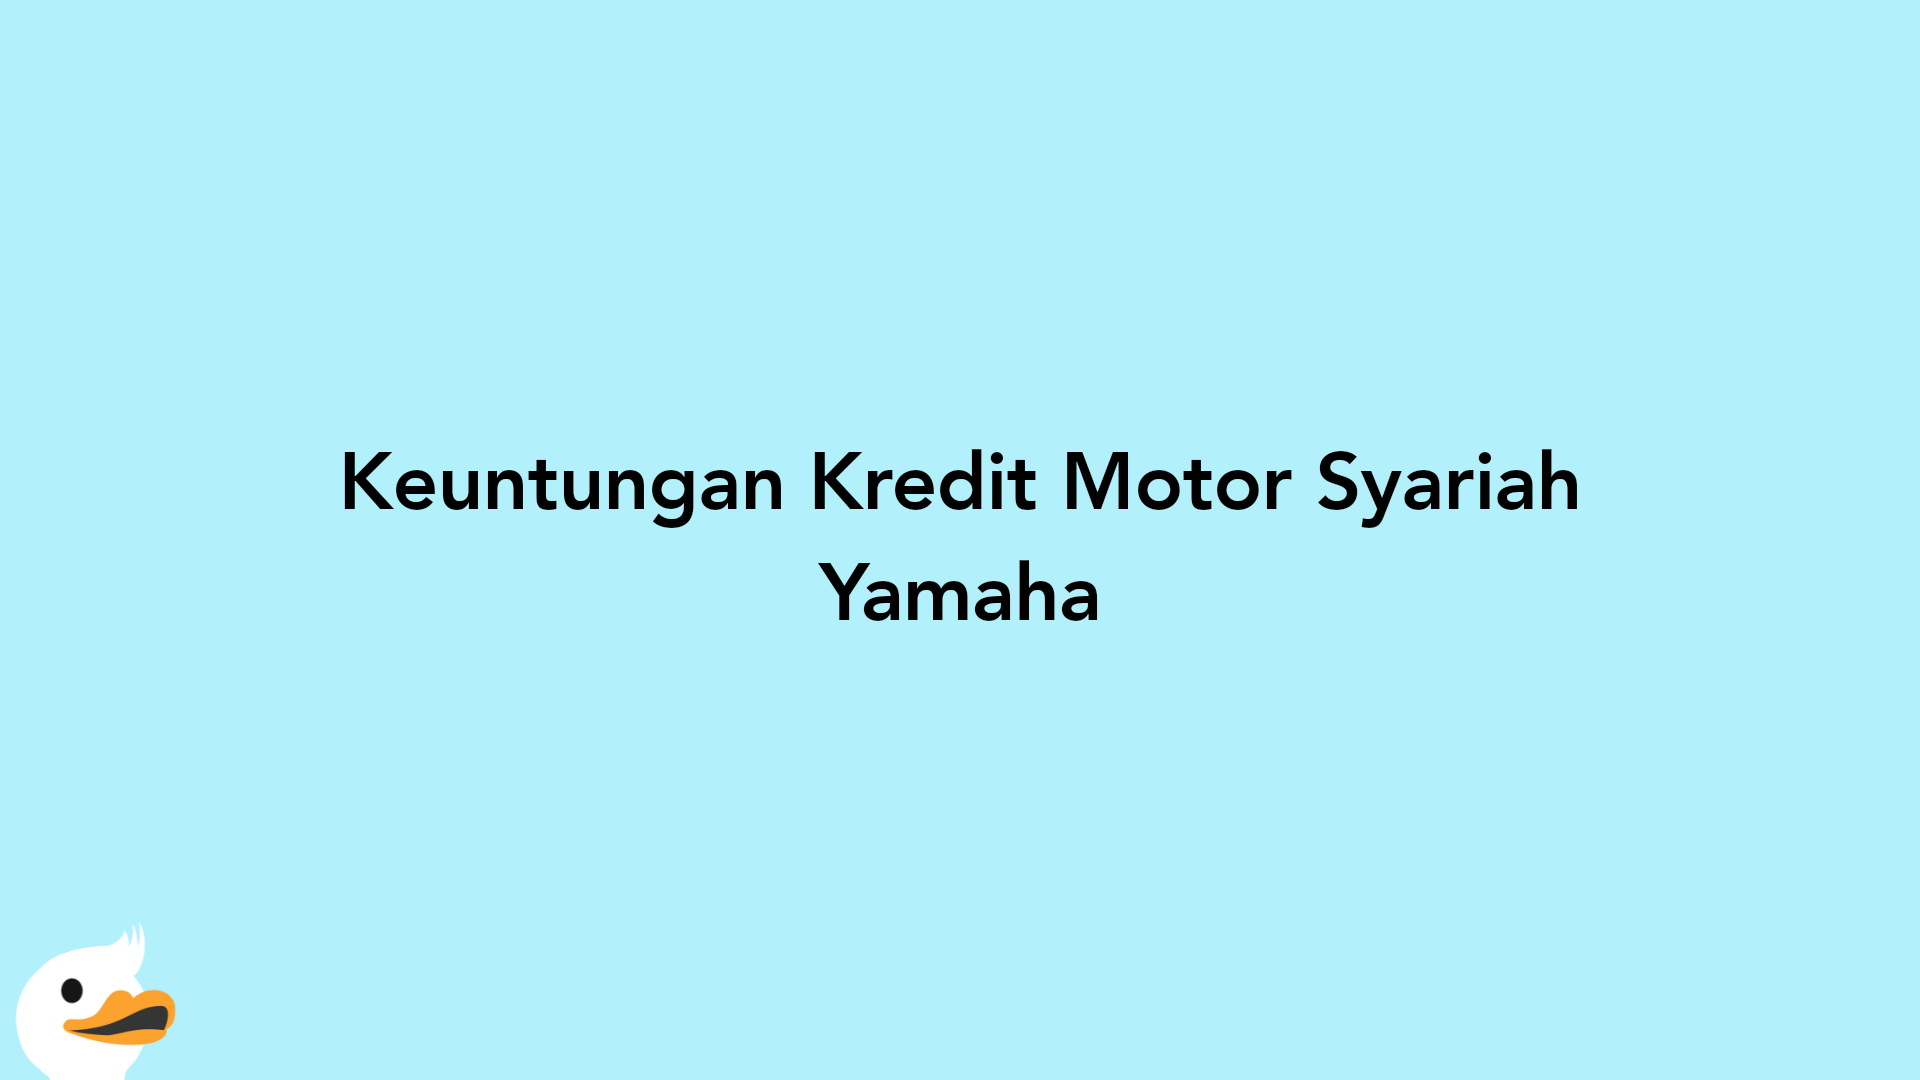 Keuntungan Kredit Motor Syariah Yamaha